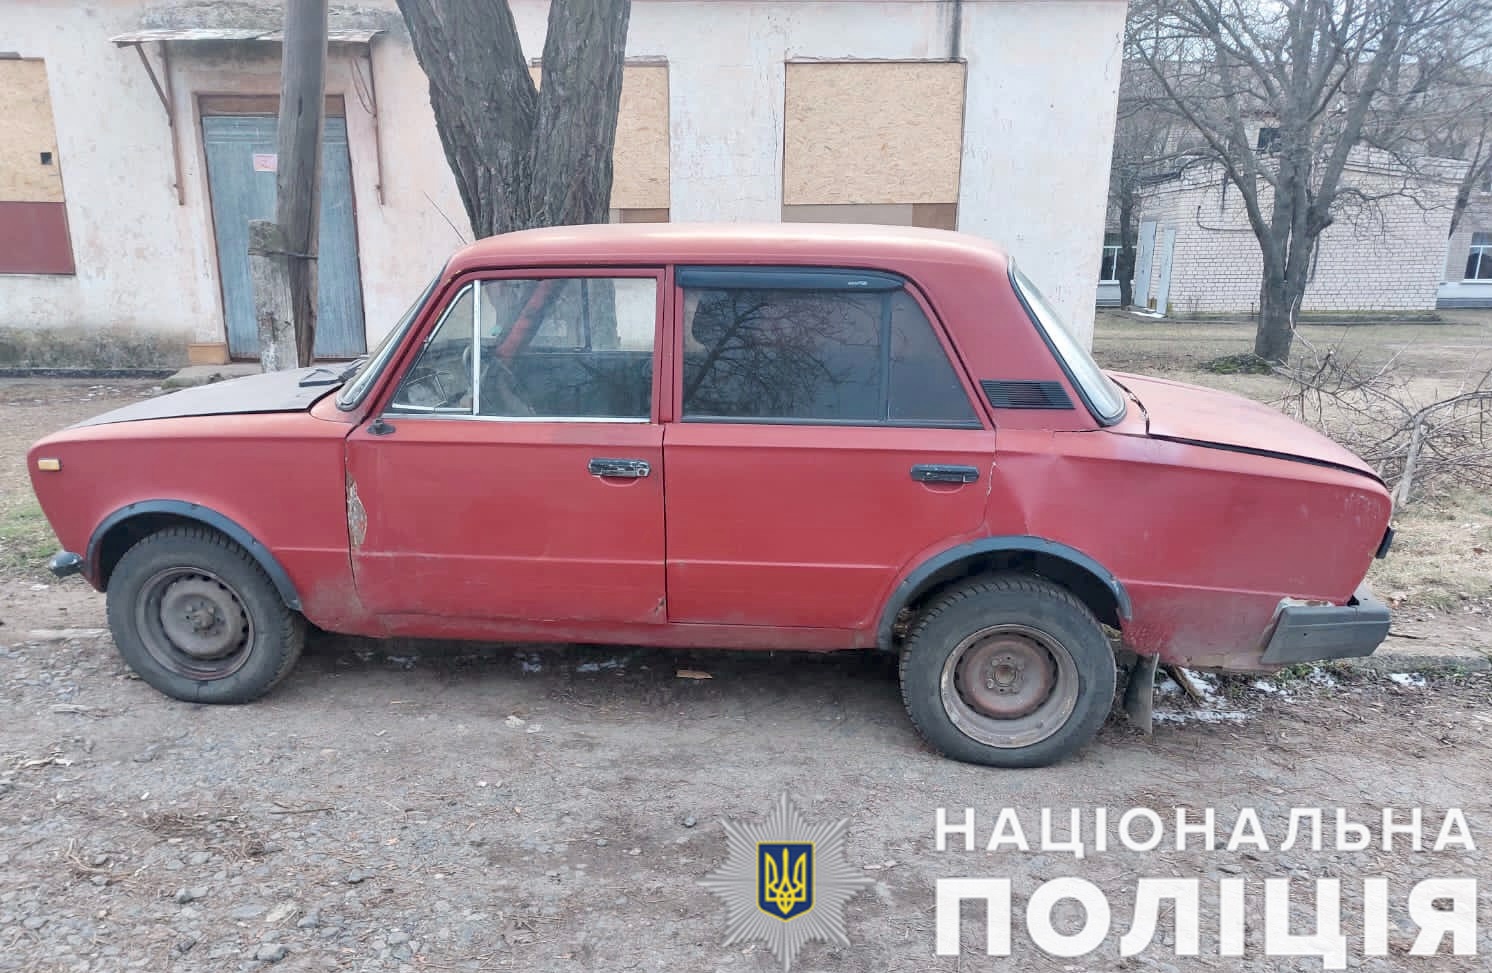 На Миколаївщині молодик викрадав авто і катався на них до закінчення пального в баку. Докатався (ФОТО) 23